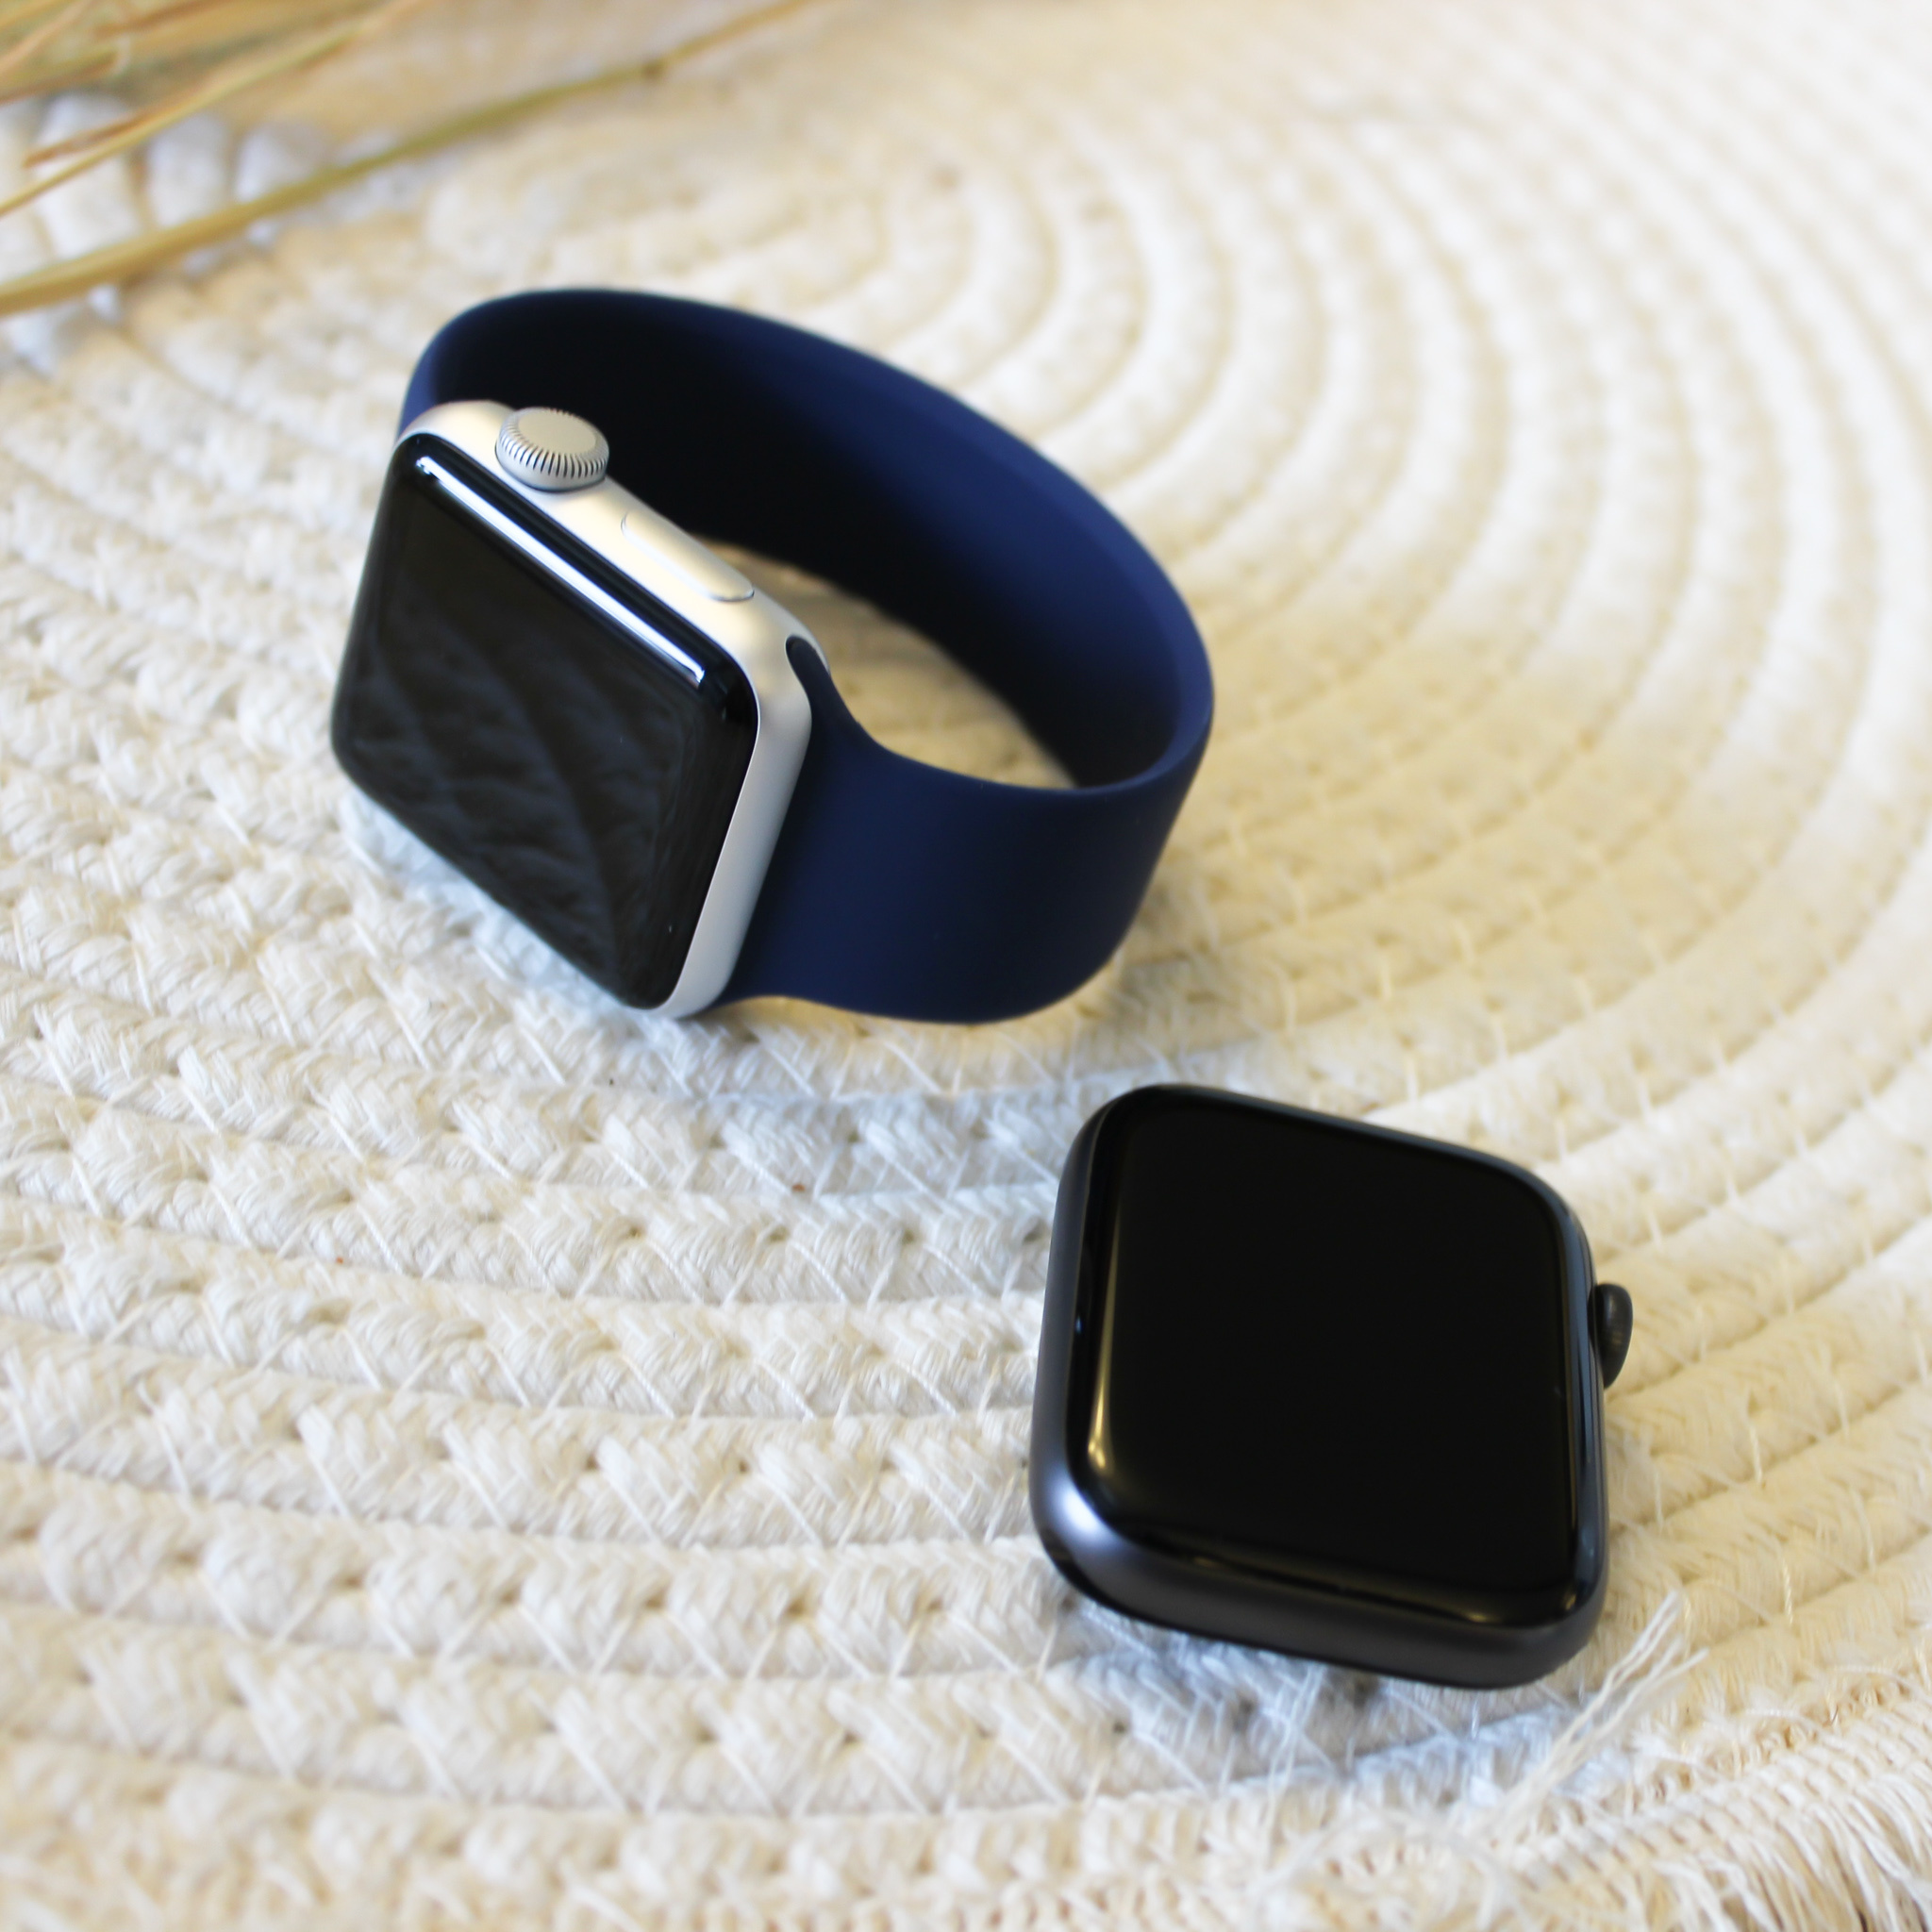  Apple Watch sport solo futópad - kék